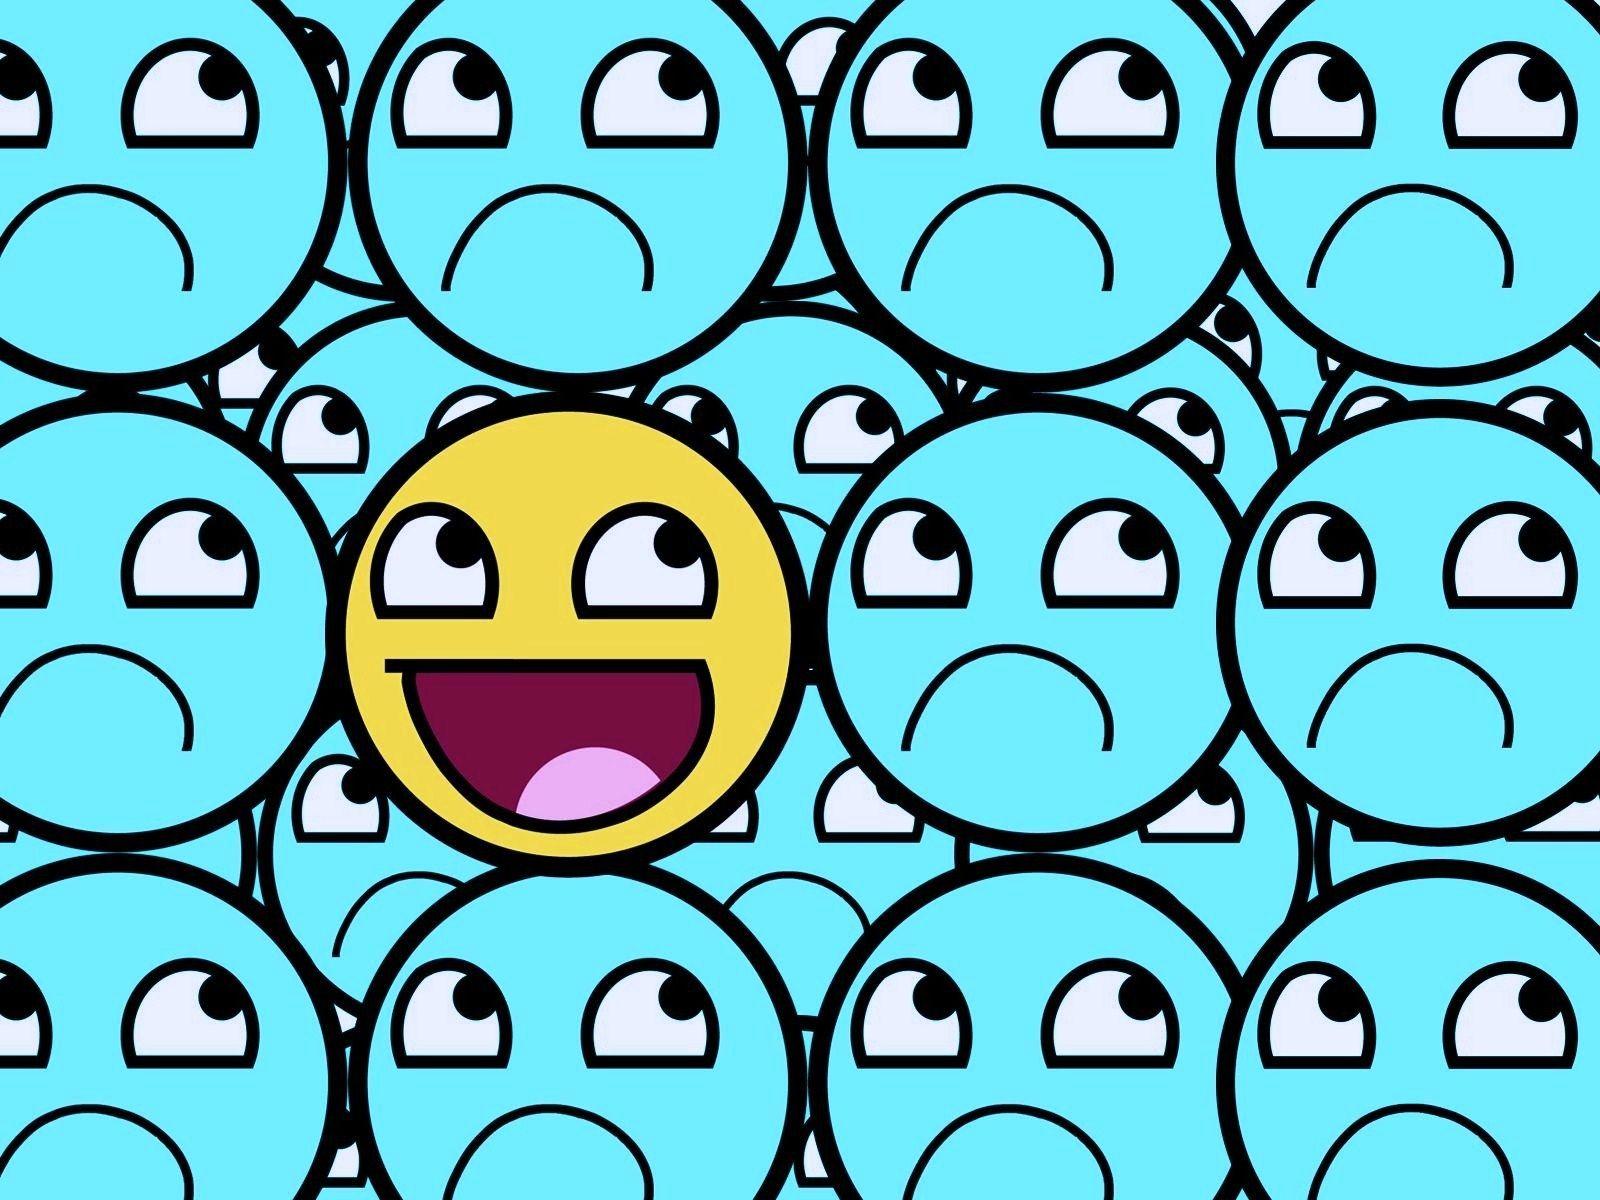 Sad Emoji Wallpapers - Wallpaper Cave